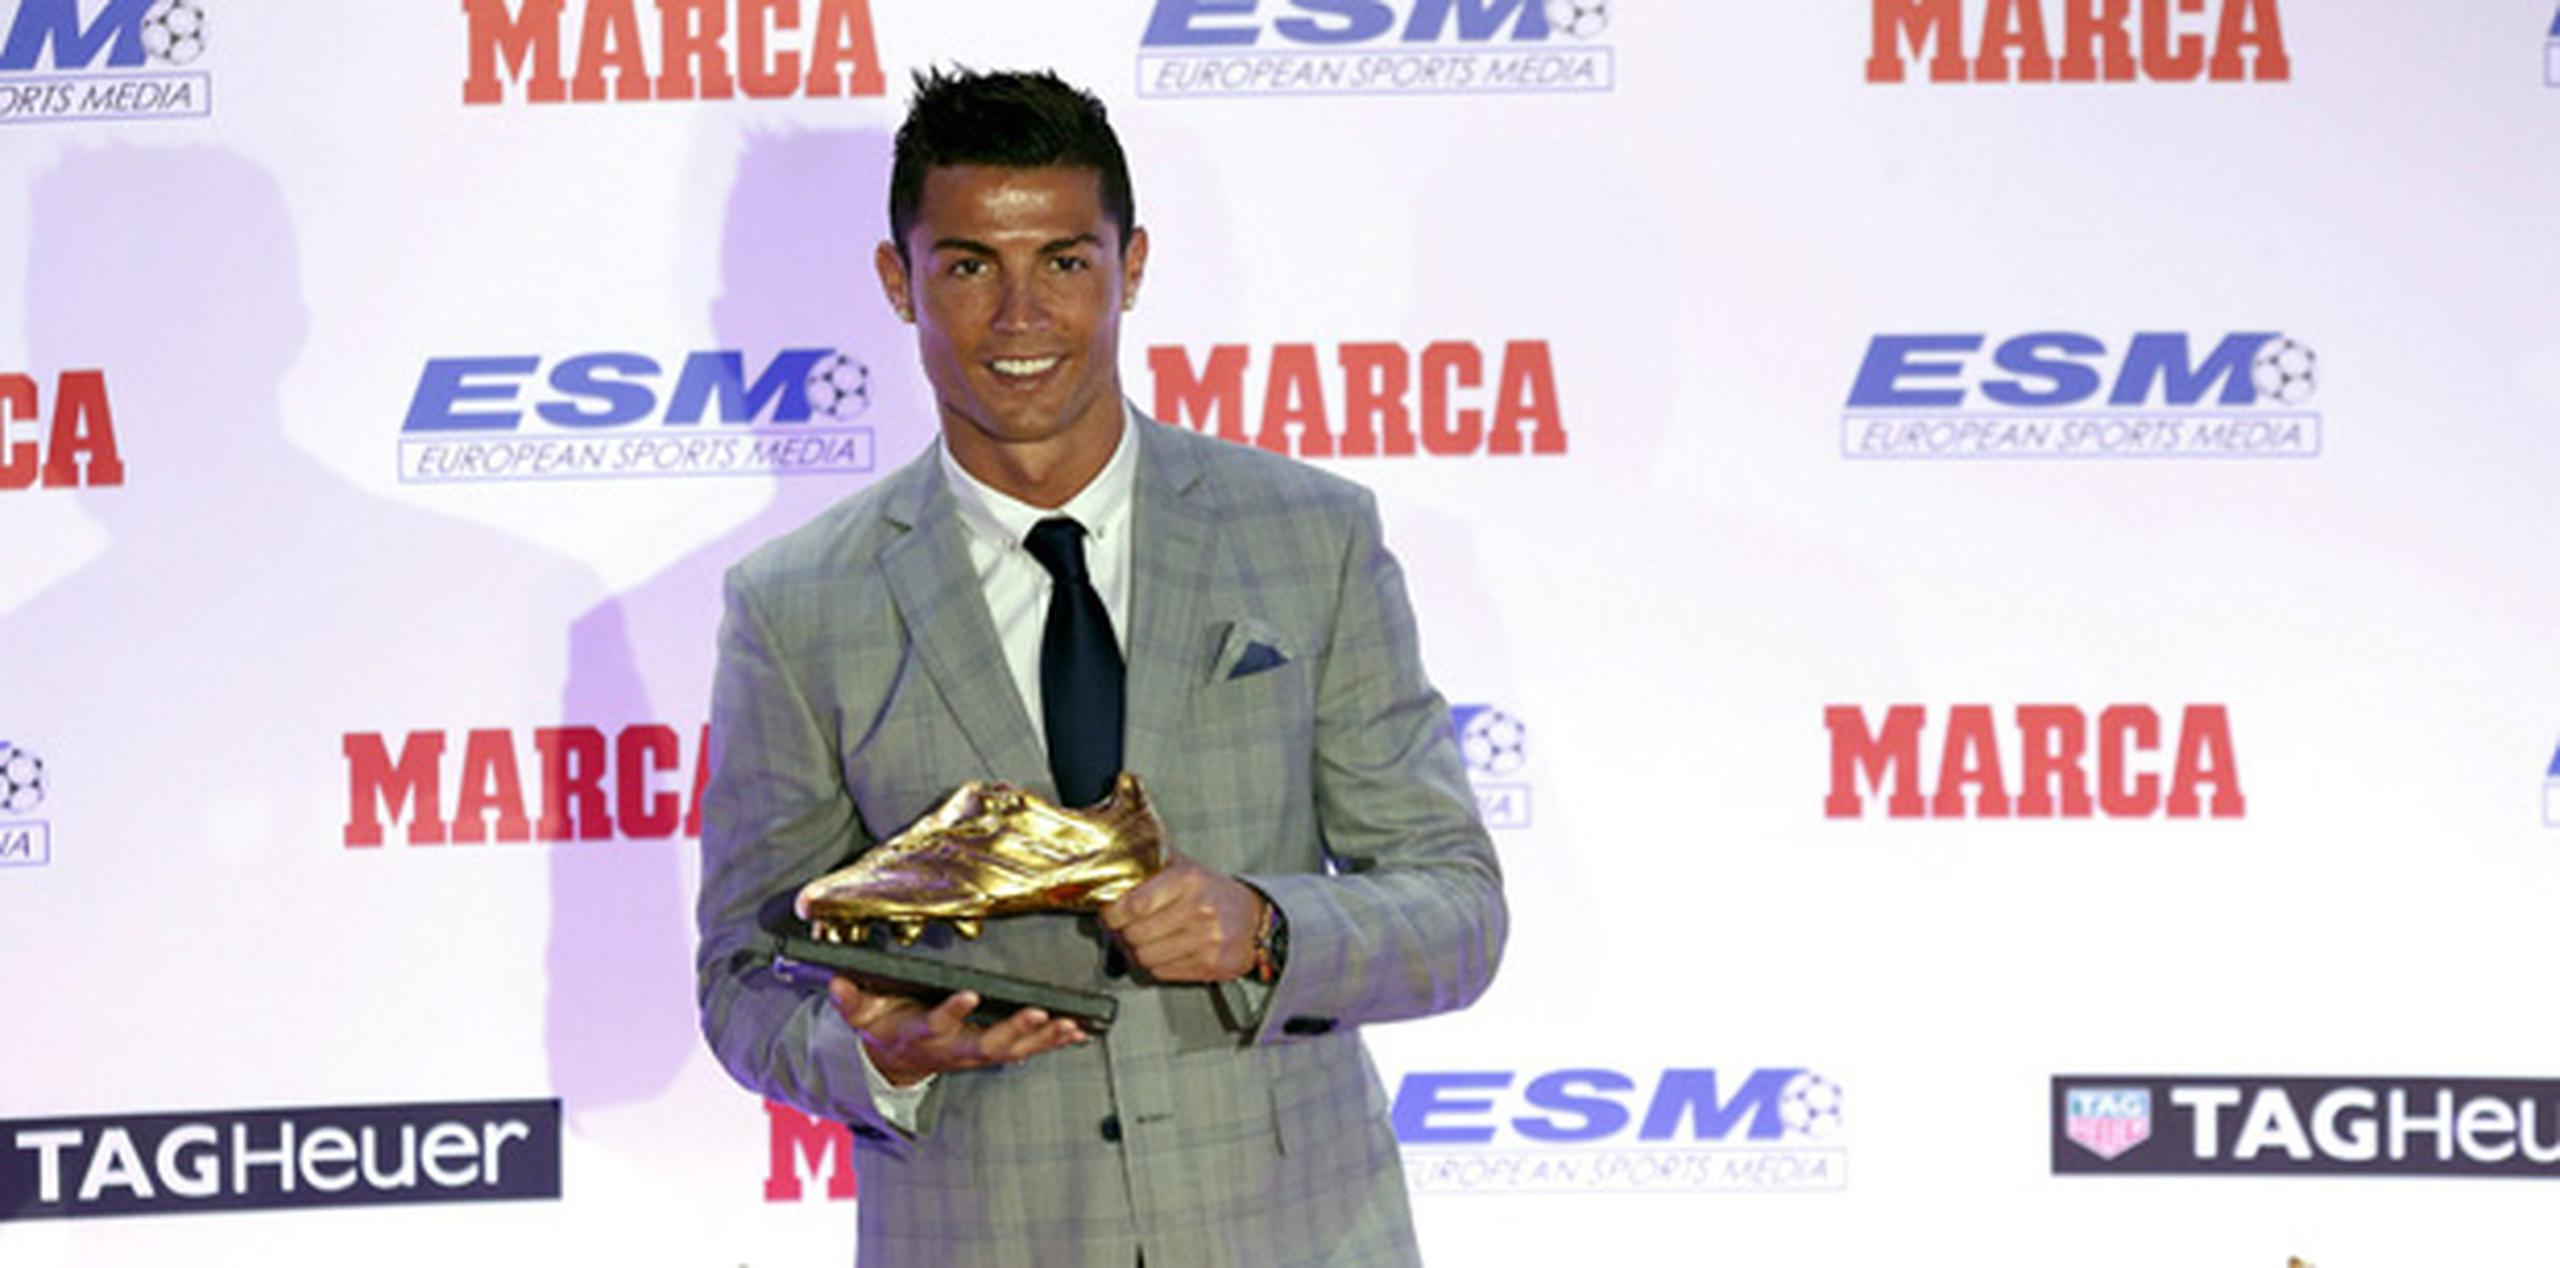 La estrella portuguesa logra este galardón por cuarta vez, tras haberlo conseguido en 2008, 2011 y 2014, y deja atrás a Messi, que lo consiguió en 2010, 2012 y 2013. (EFE)